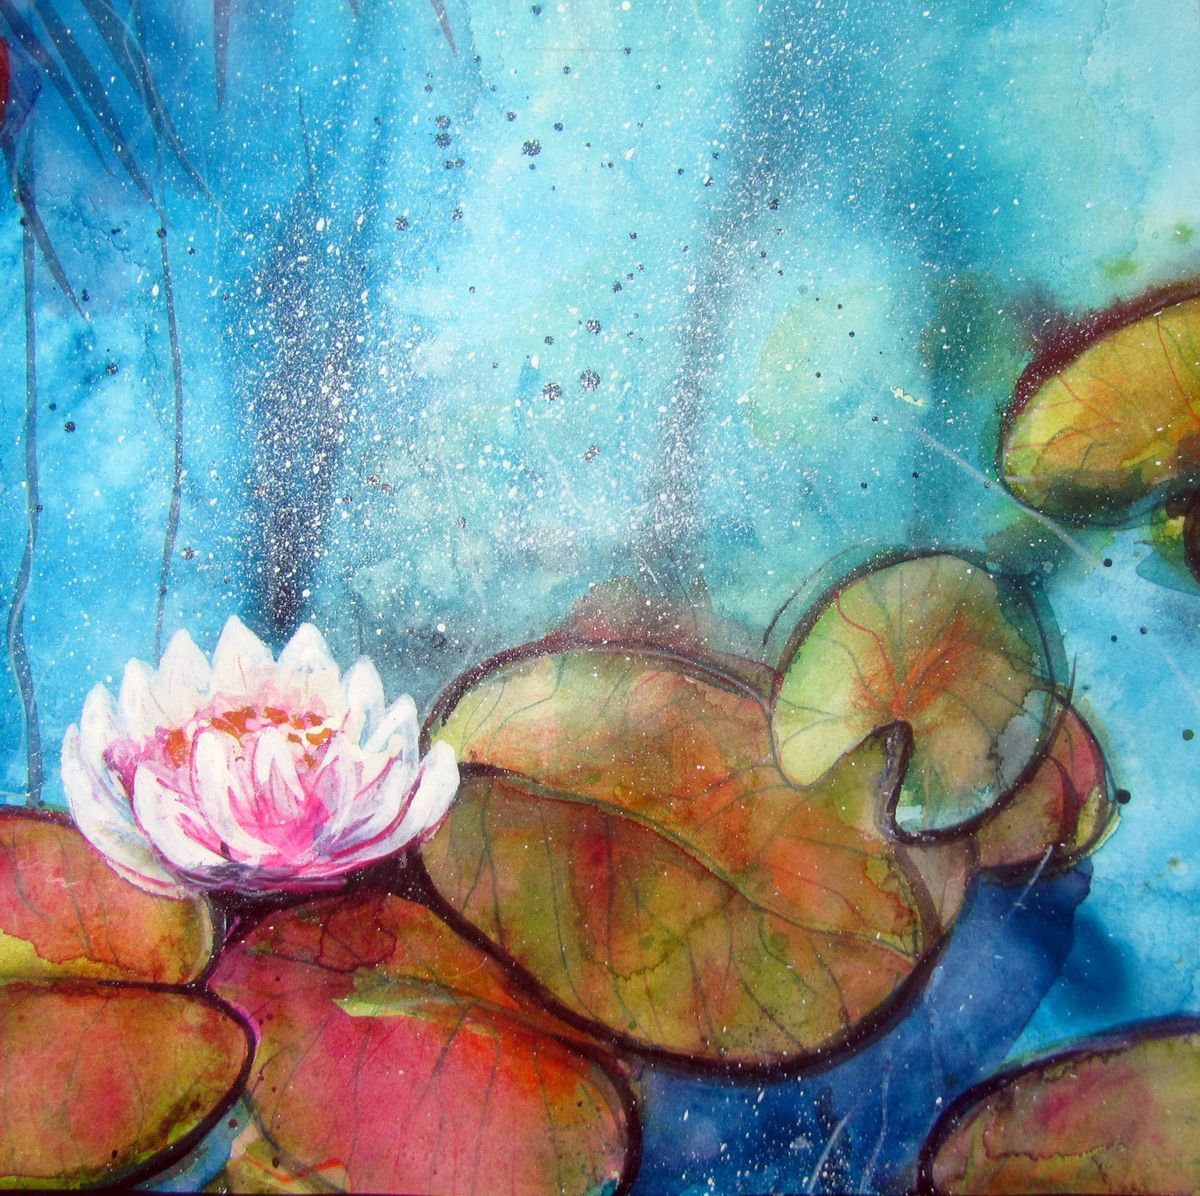 Waterlilies #5 by Violeta Damjanovic-Behrendt